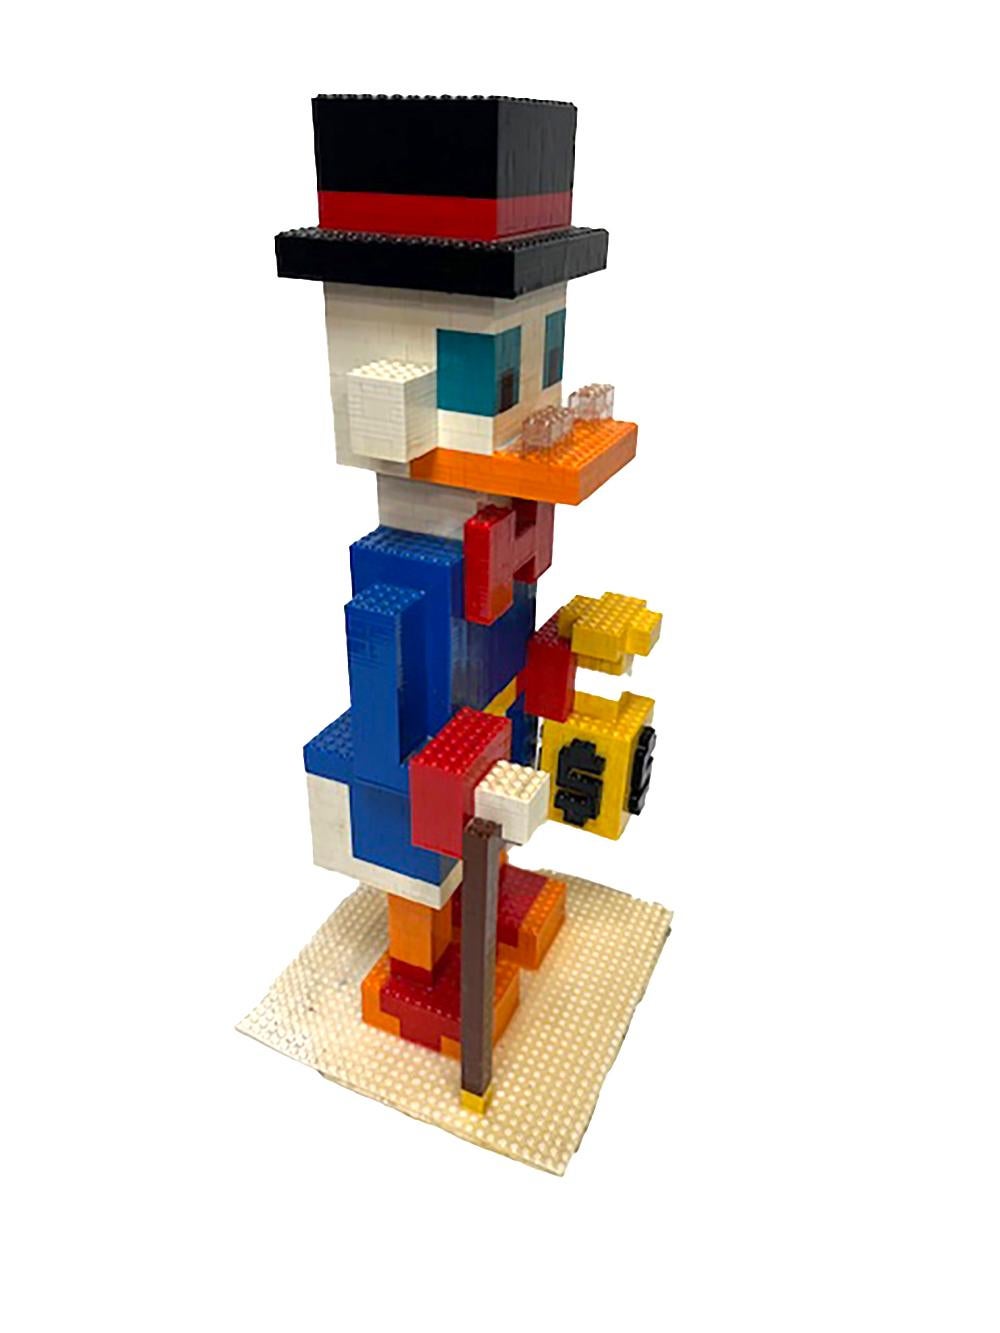 Les photos de M. Lego Scrooge McDuck parlent d'elles-mêmes. Cette figurine est unique et serait le point de mire de n'importe quelle pièce. Tous les espaces ont besoin d'un peu de rire et de fantaisie, et ce type répondra sans aucun doute à cette